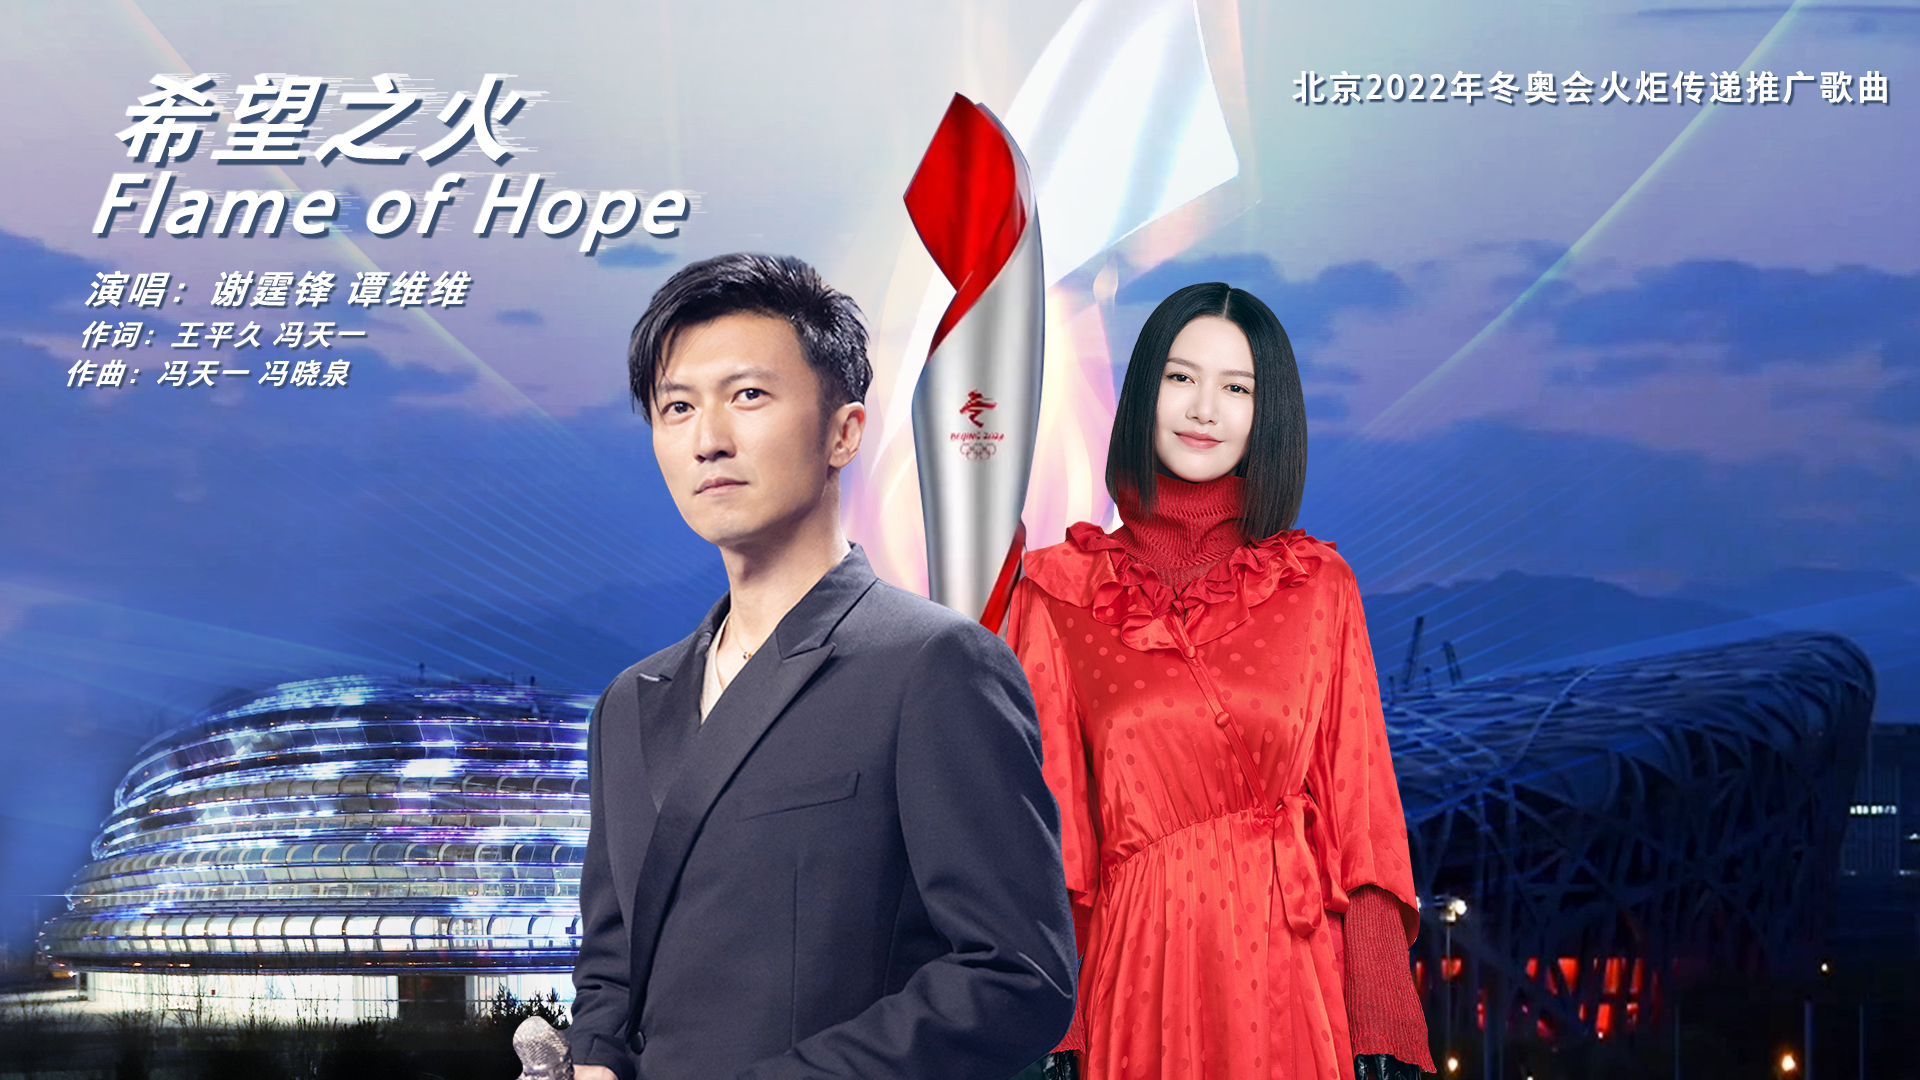 北京2022年冬奥会火炬传递推广歌曲《希望之火》